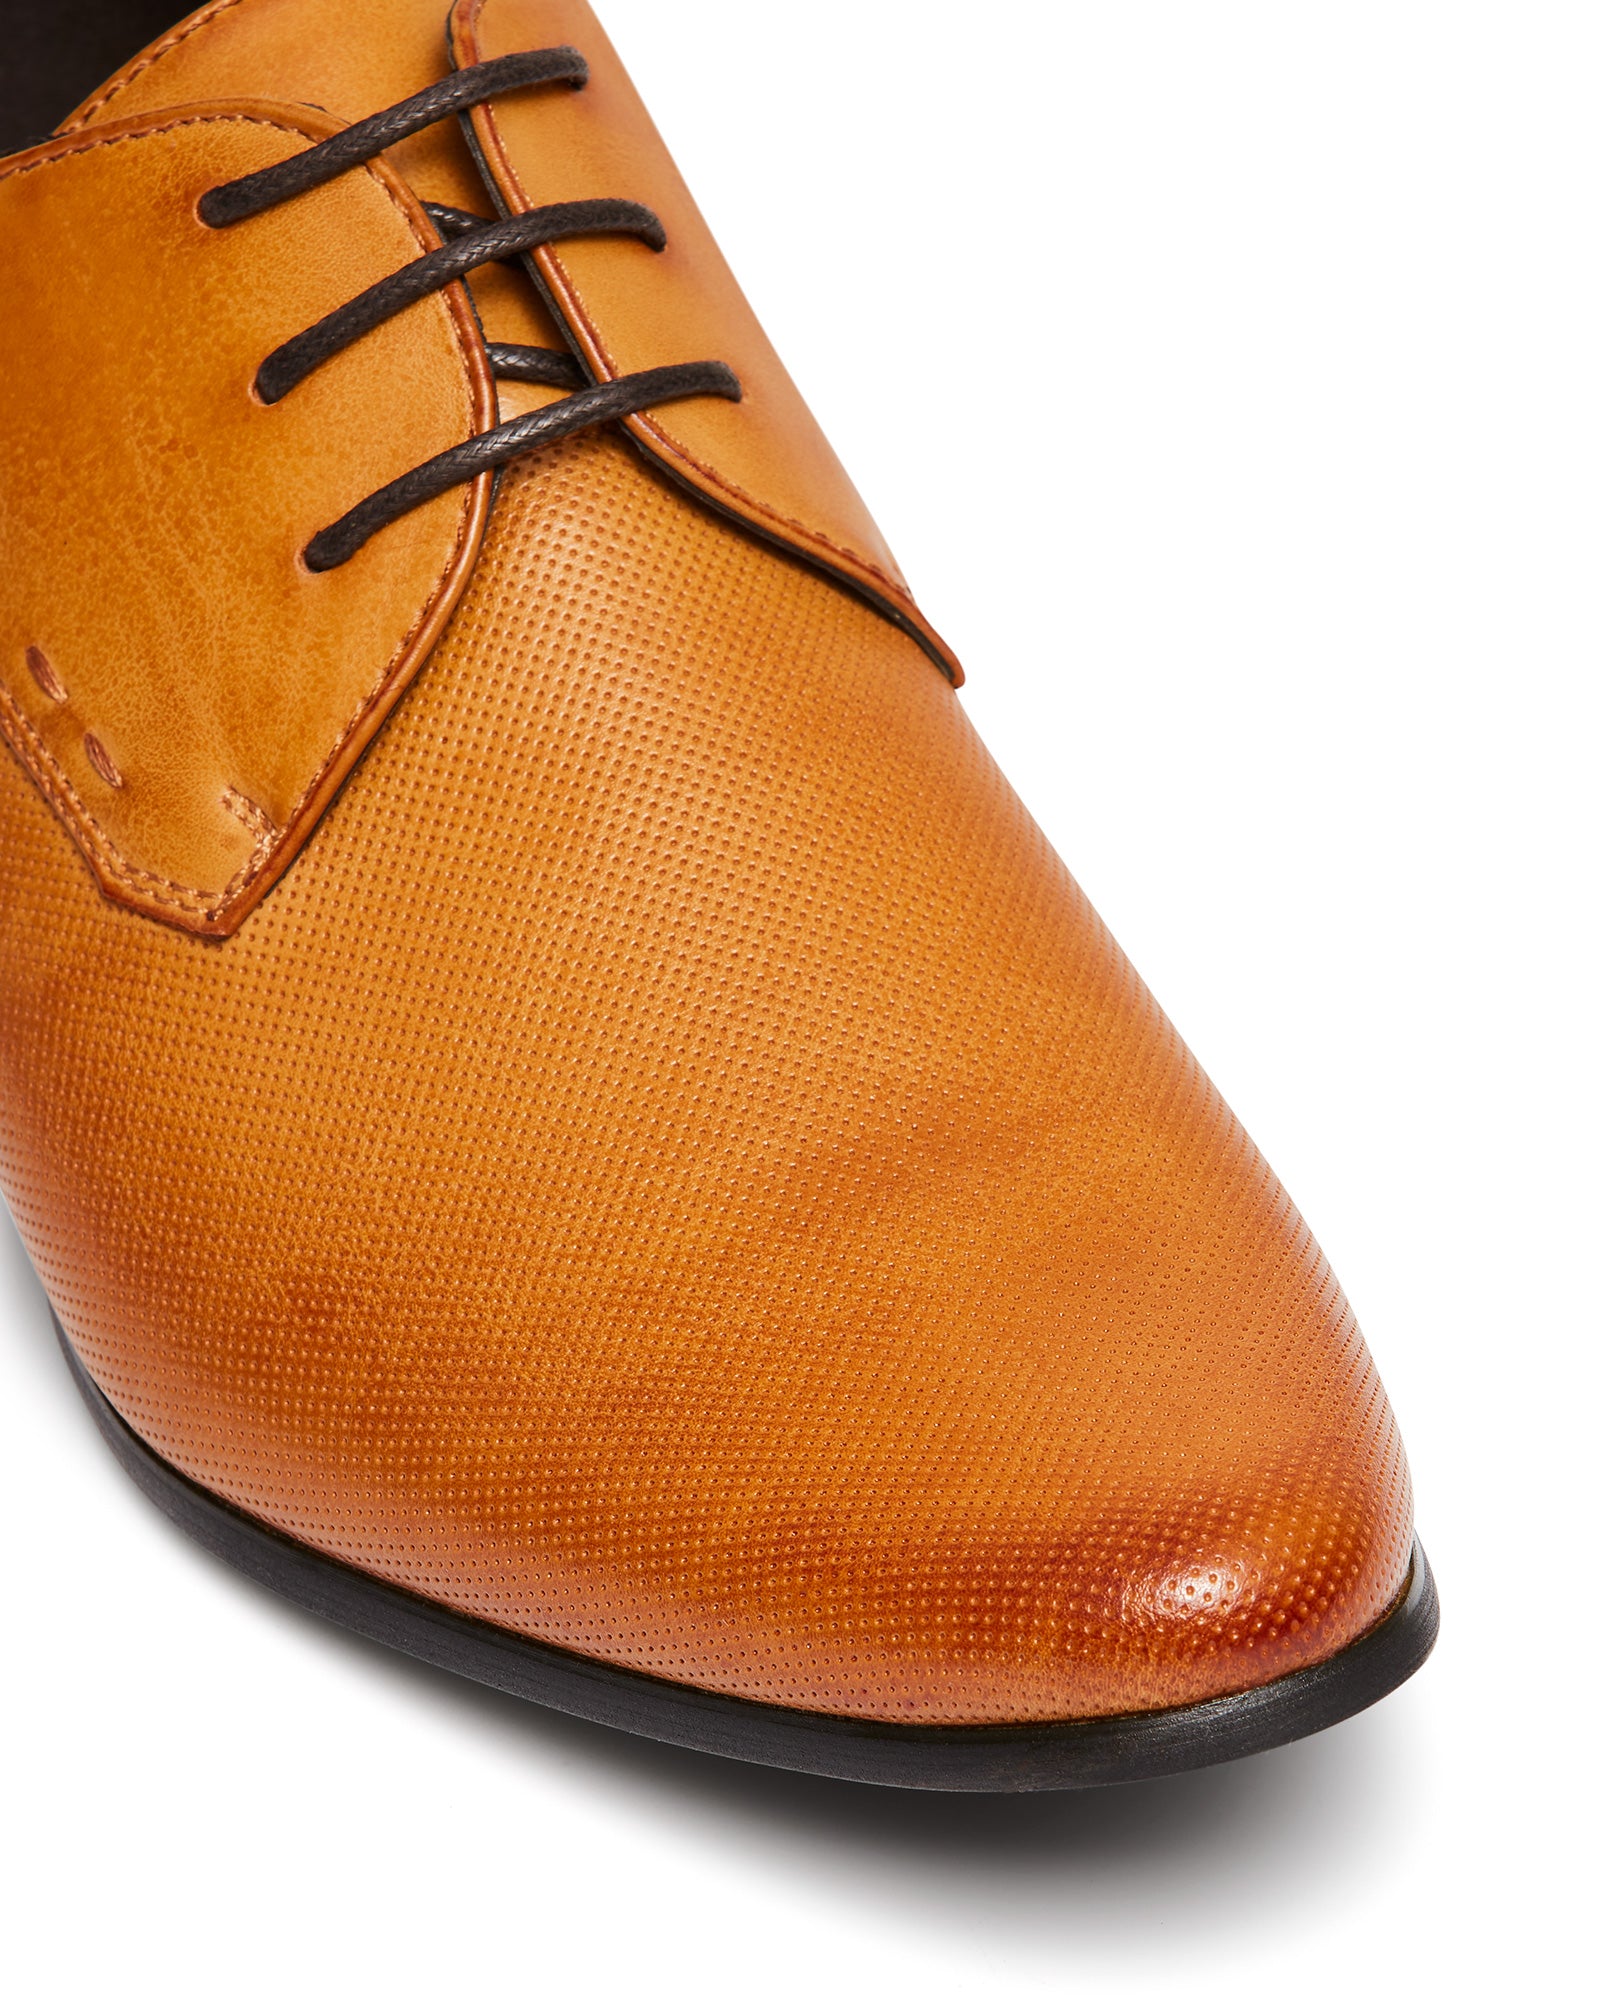 Uncut Shoes Beveridge Tan | Men's Dress Shoe | Derby | Lace Up | Office